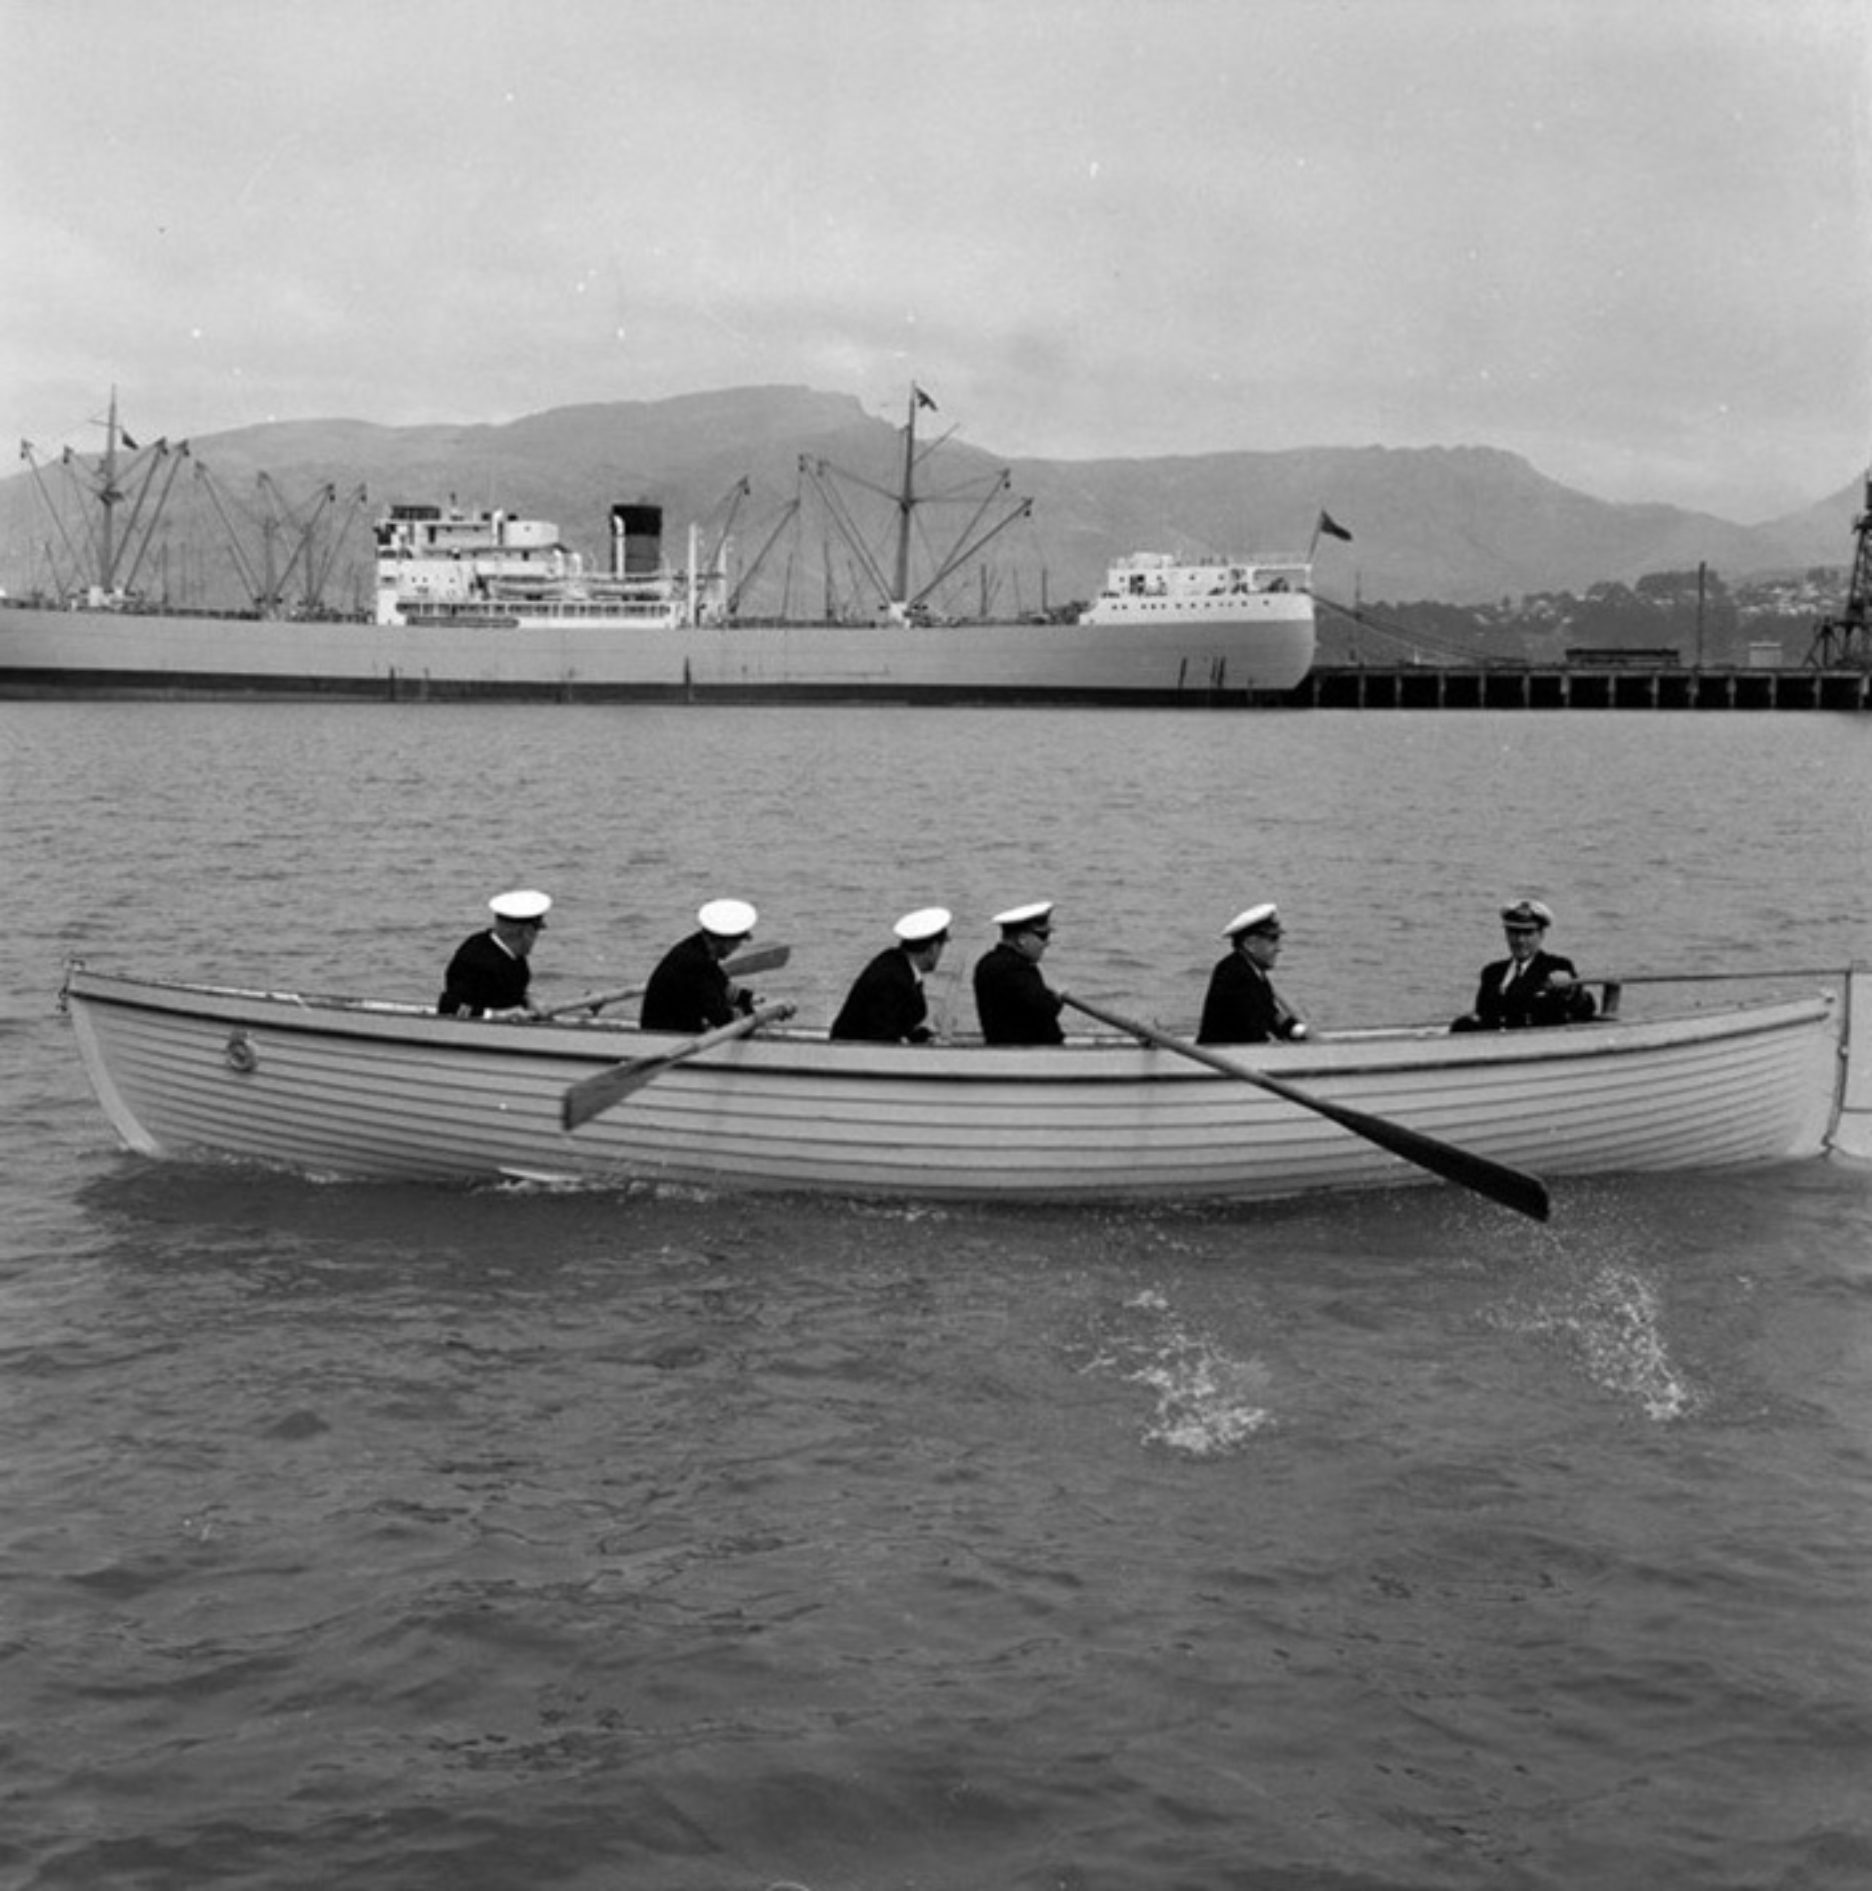 6 men rowboat